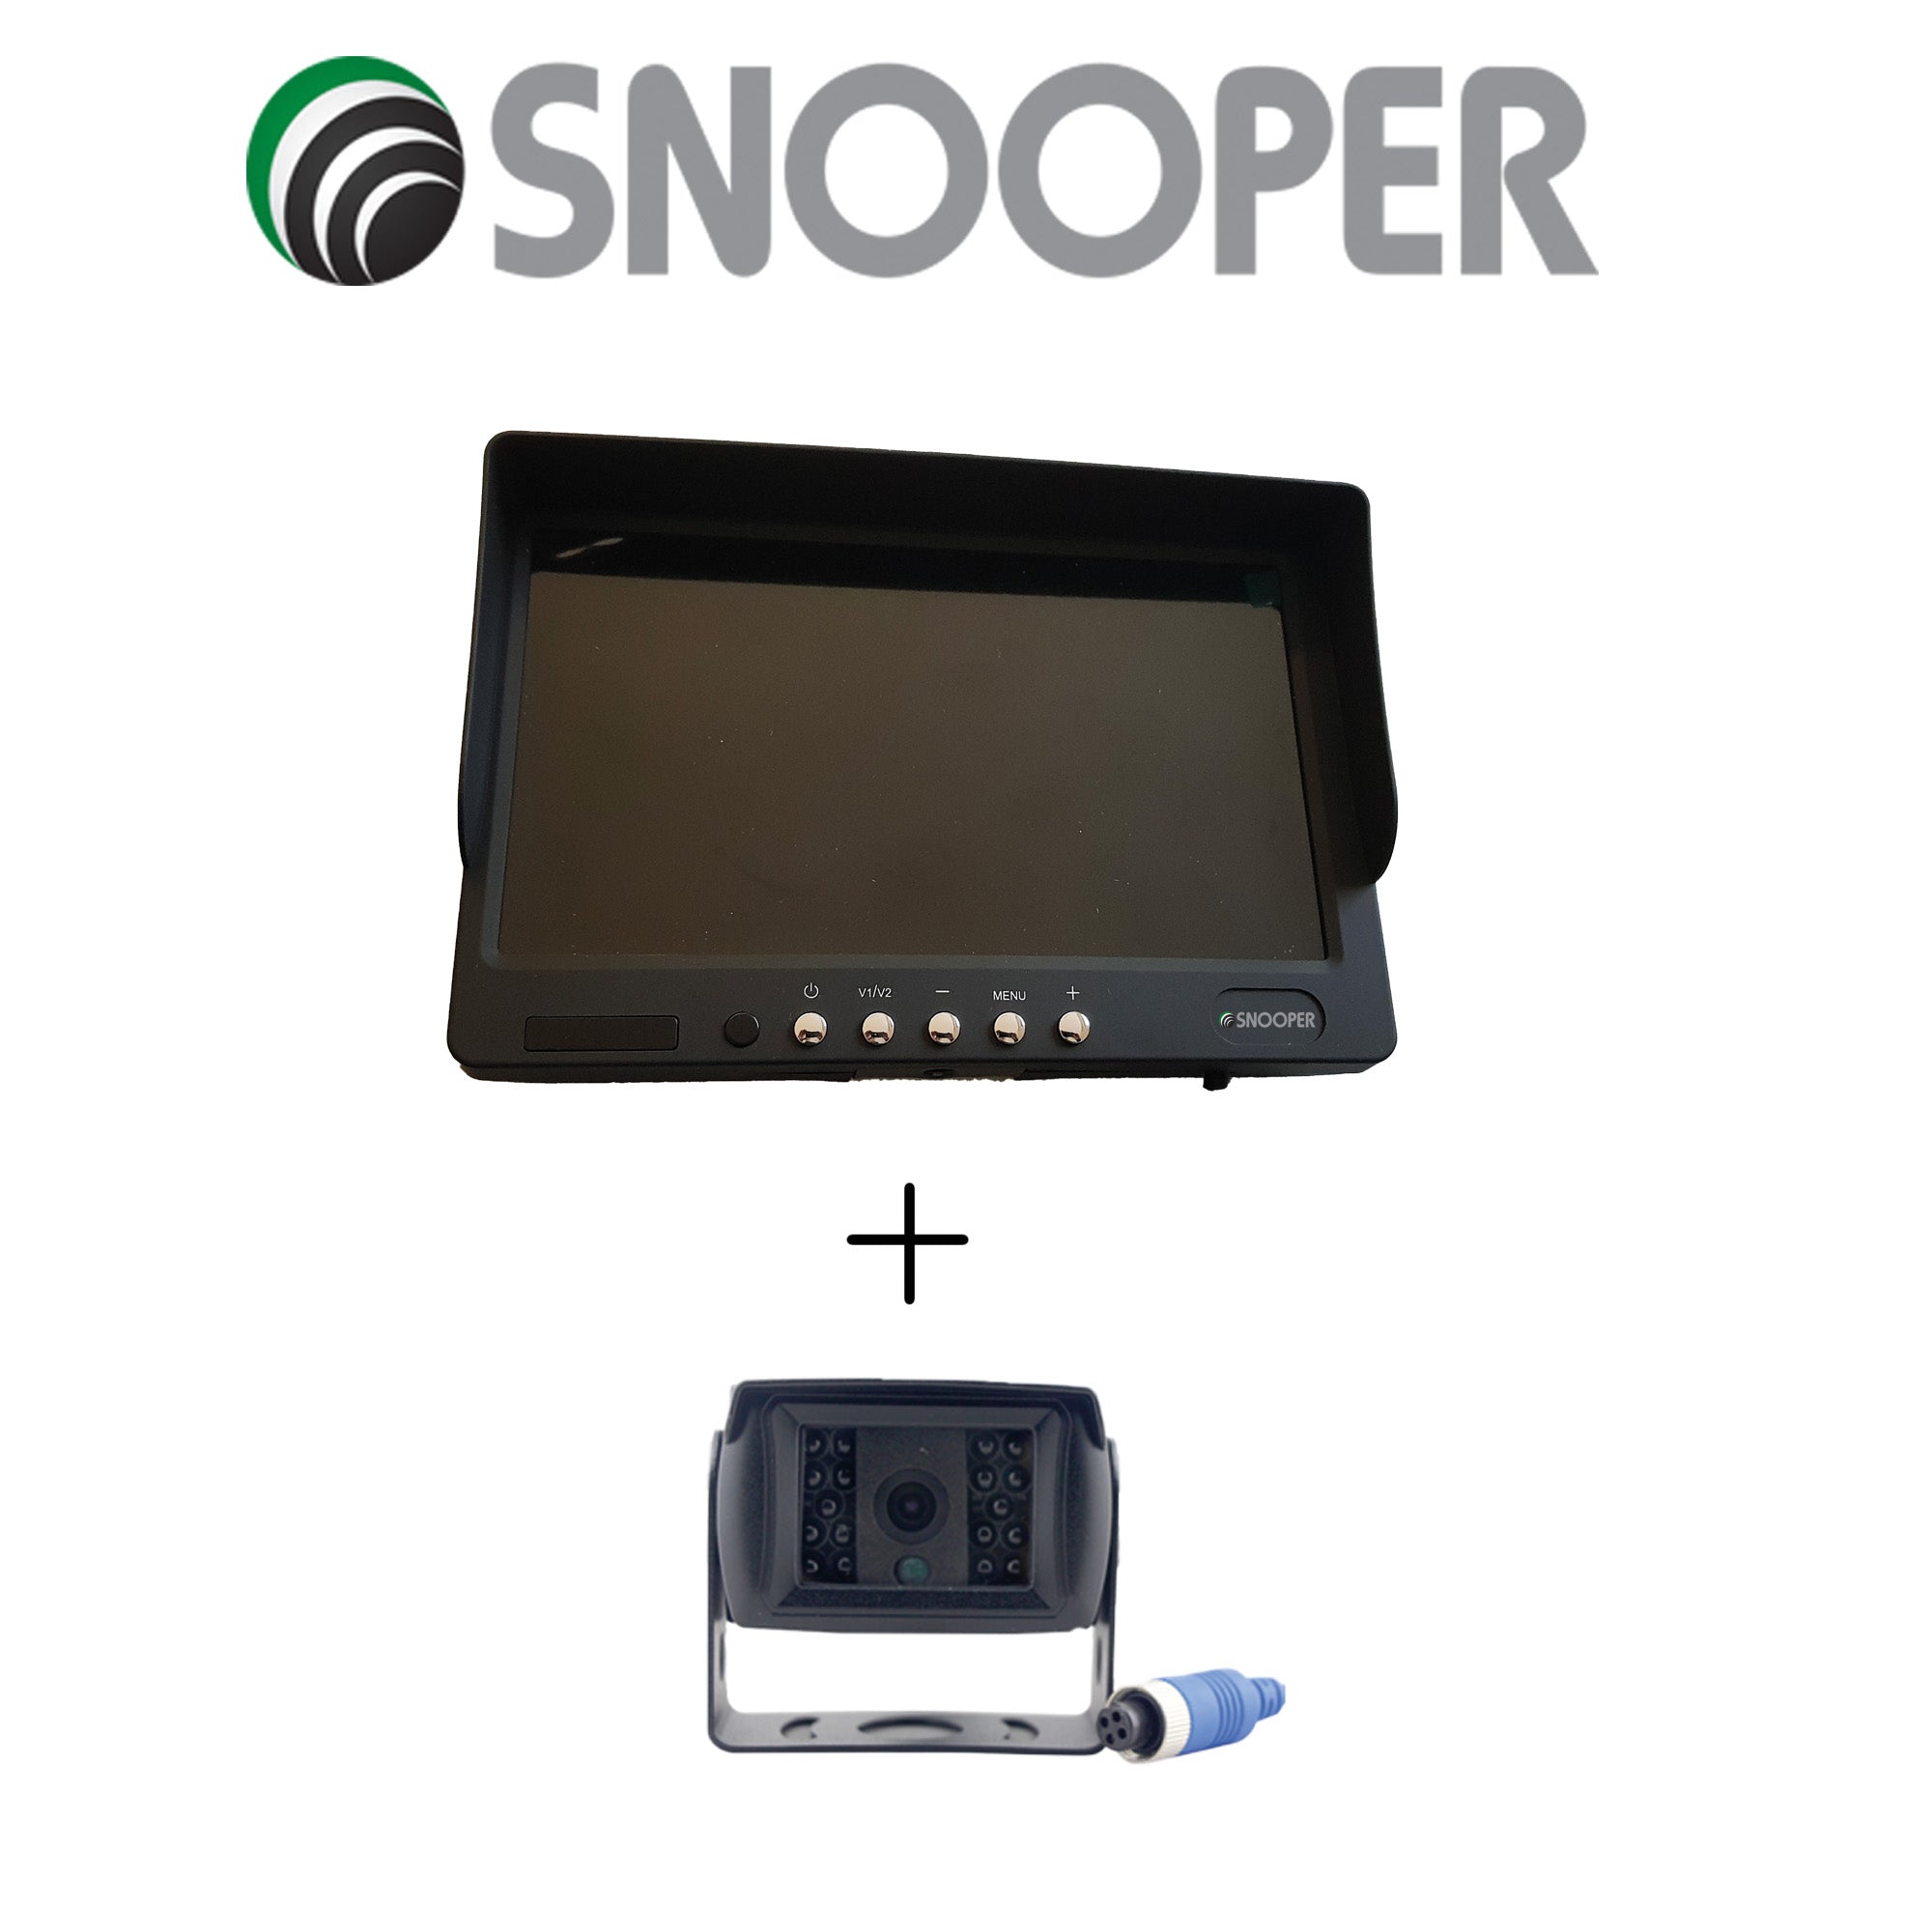 Snooper 7 ZOLL Monitor V1 AHD LCD-Display MO-B1 + Snooper 4Pin digital Rückfahrkamera RKF-B1 720P AHD LKW System Art-Nr.: BU-MK1